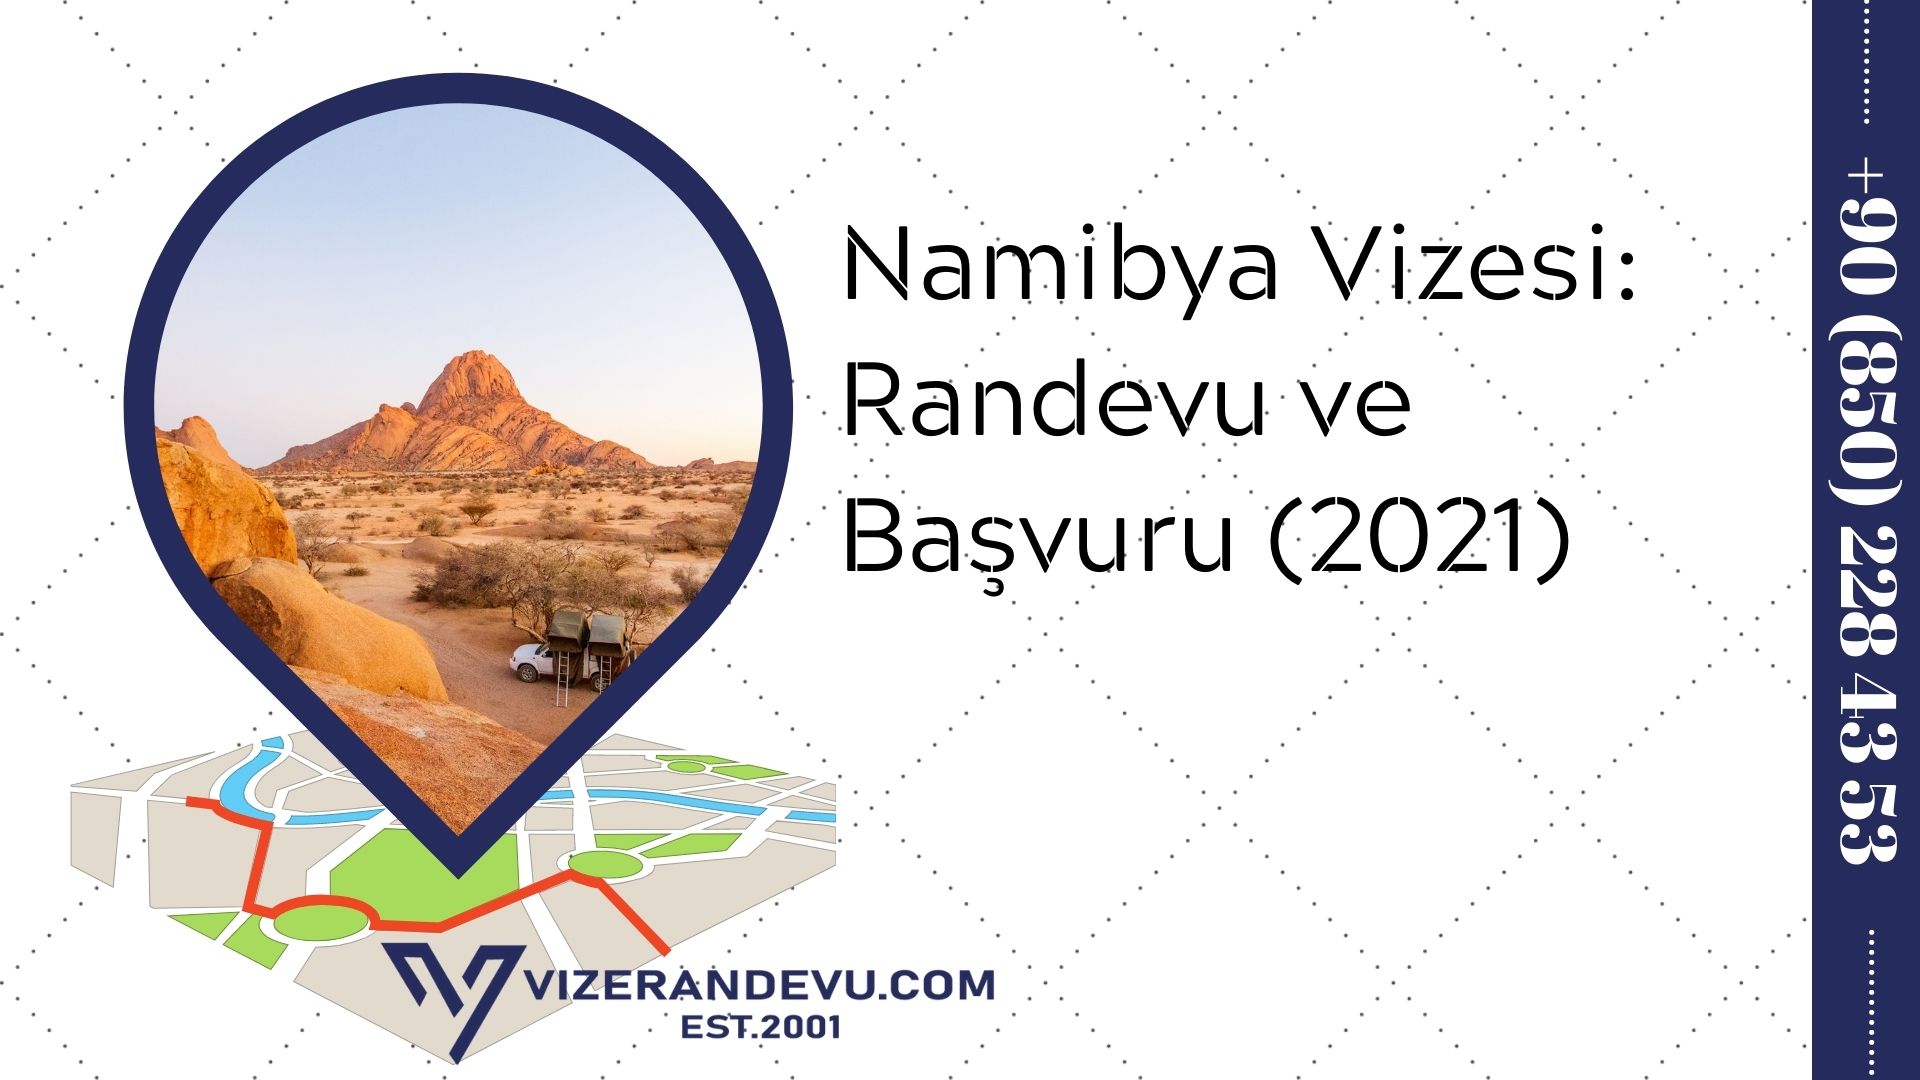 Namibya Vizesi: Randevu ve Başvuru (2021)